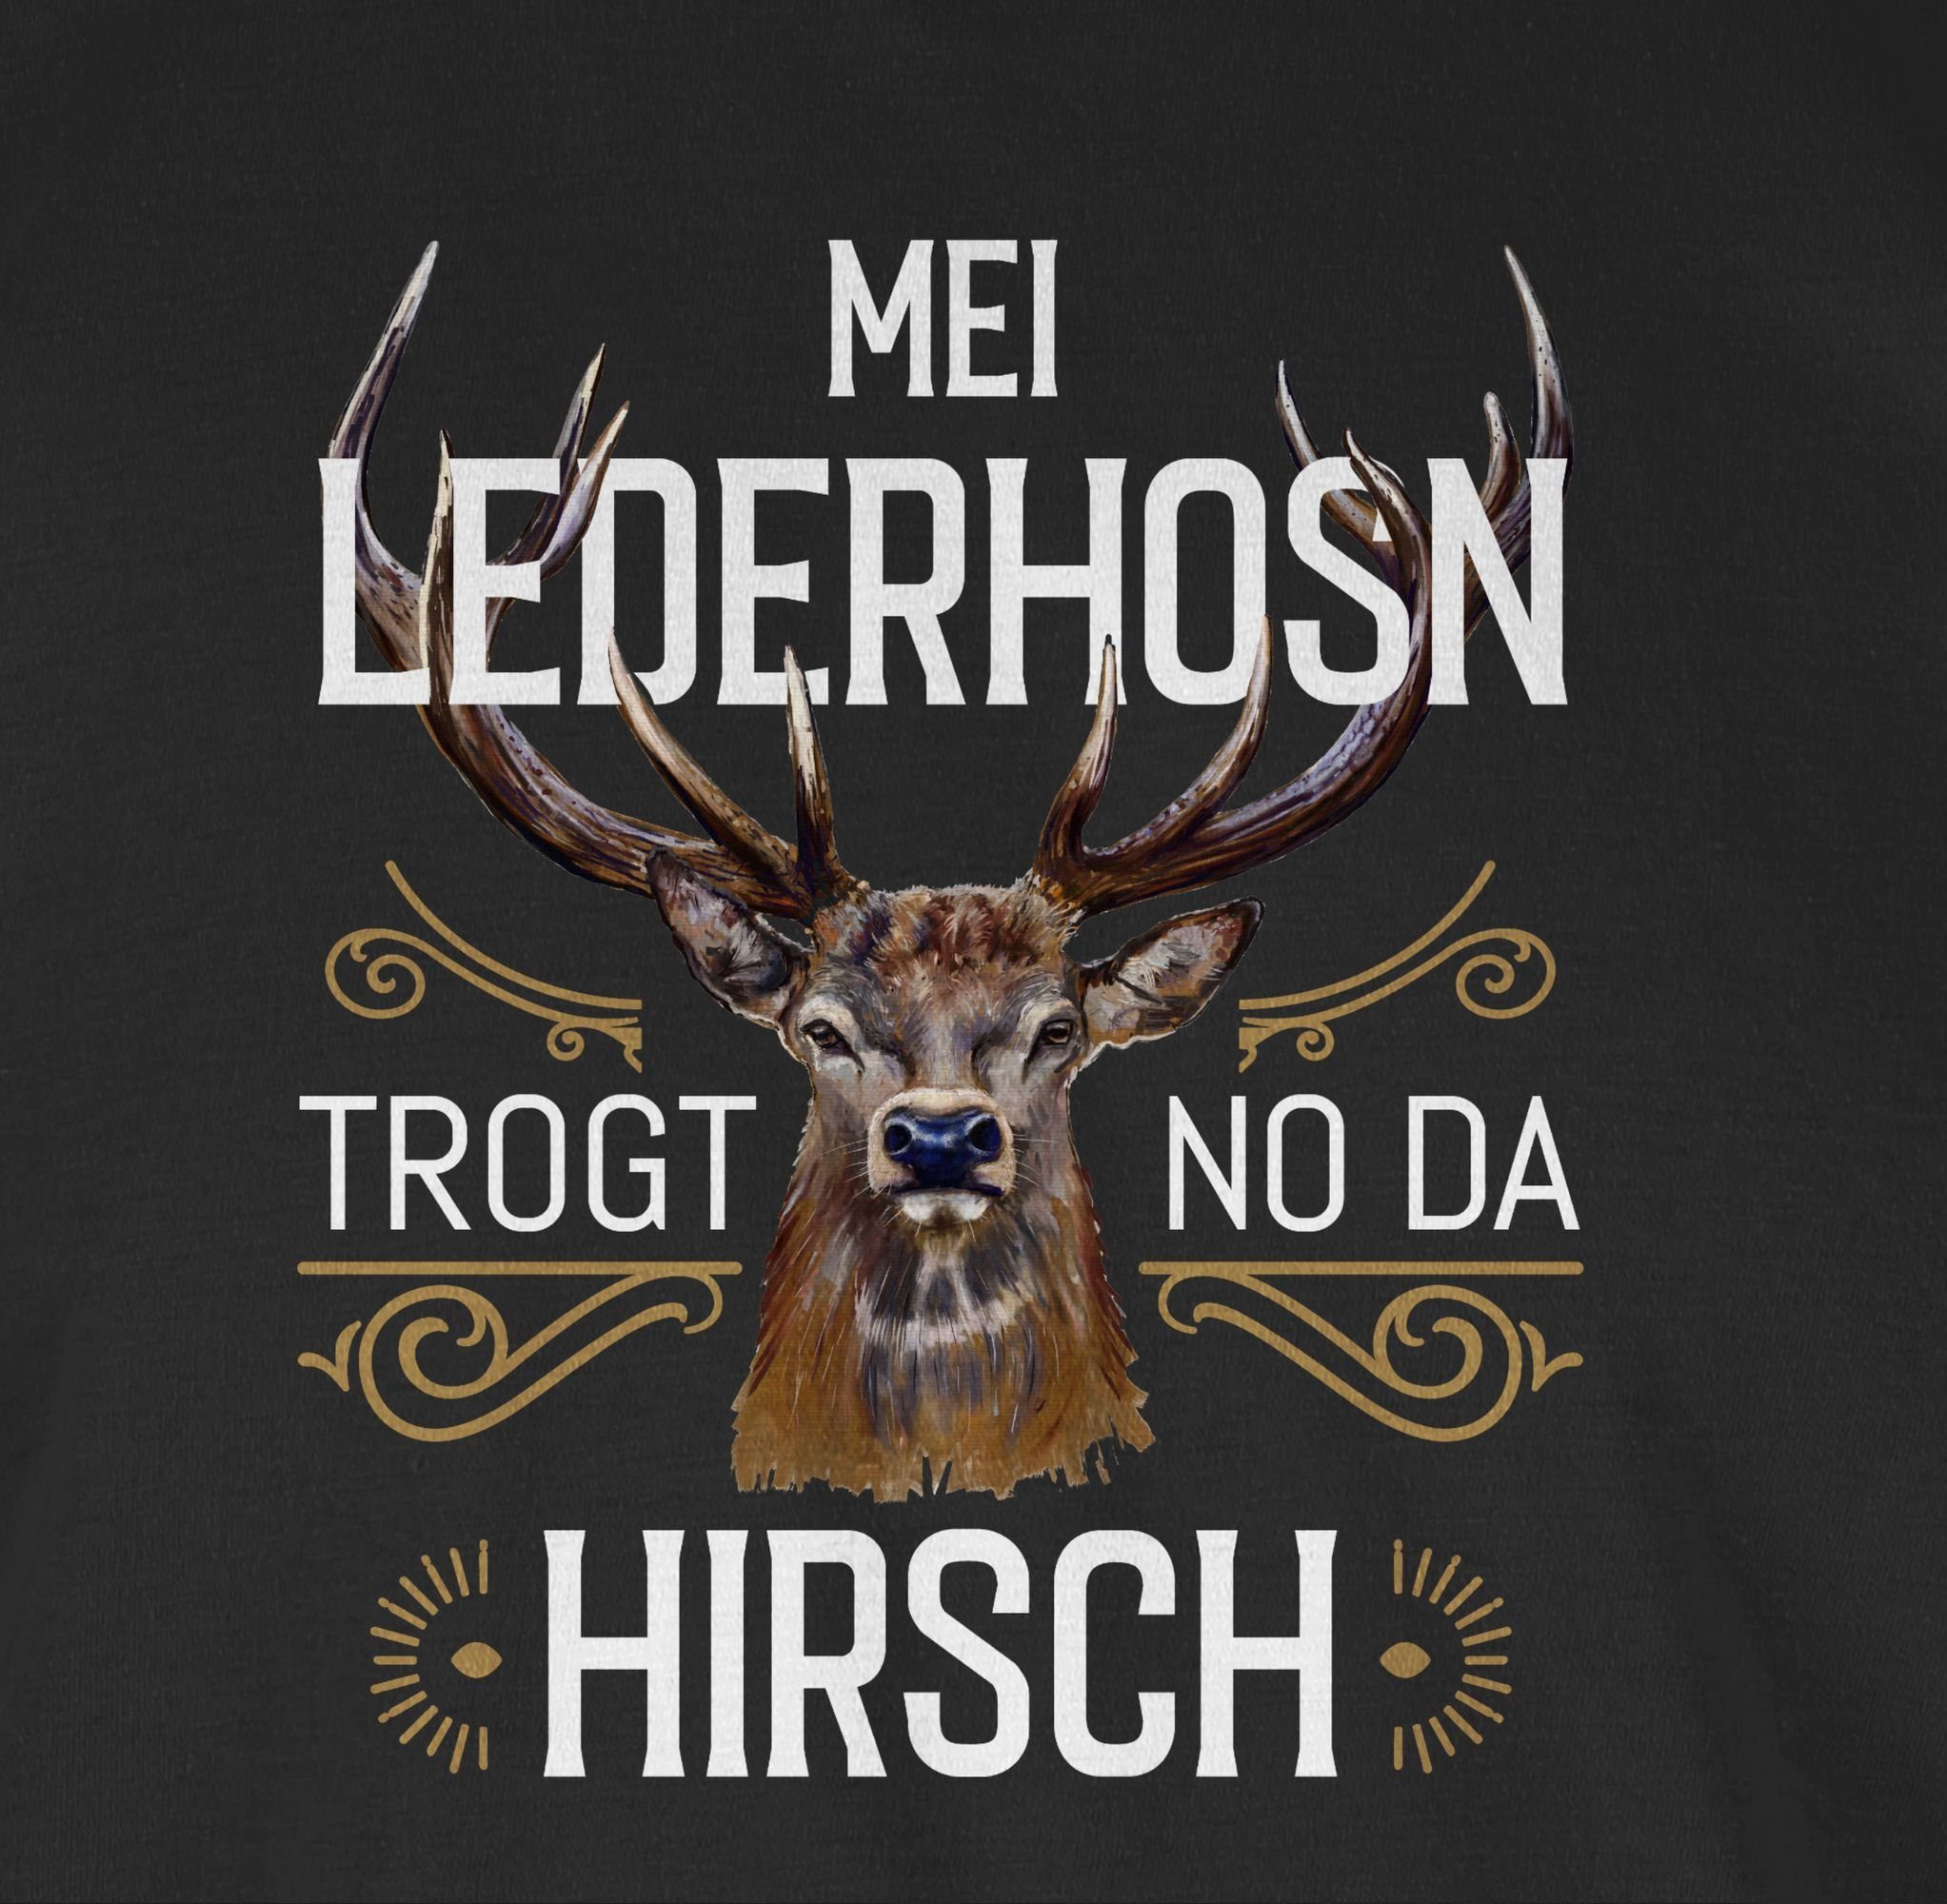 T-Shirt Hirsch da Herren Shirtracer Mei Lederhosn Oktoberfest weiß trogt Mode no 01 - Schwarz für braun